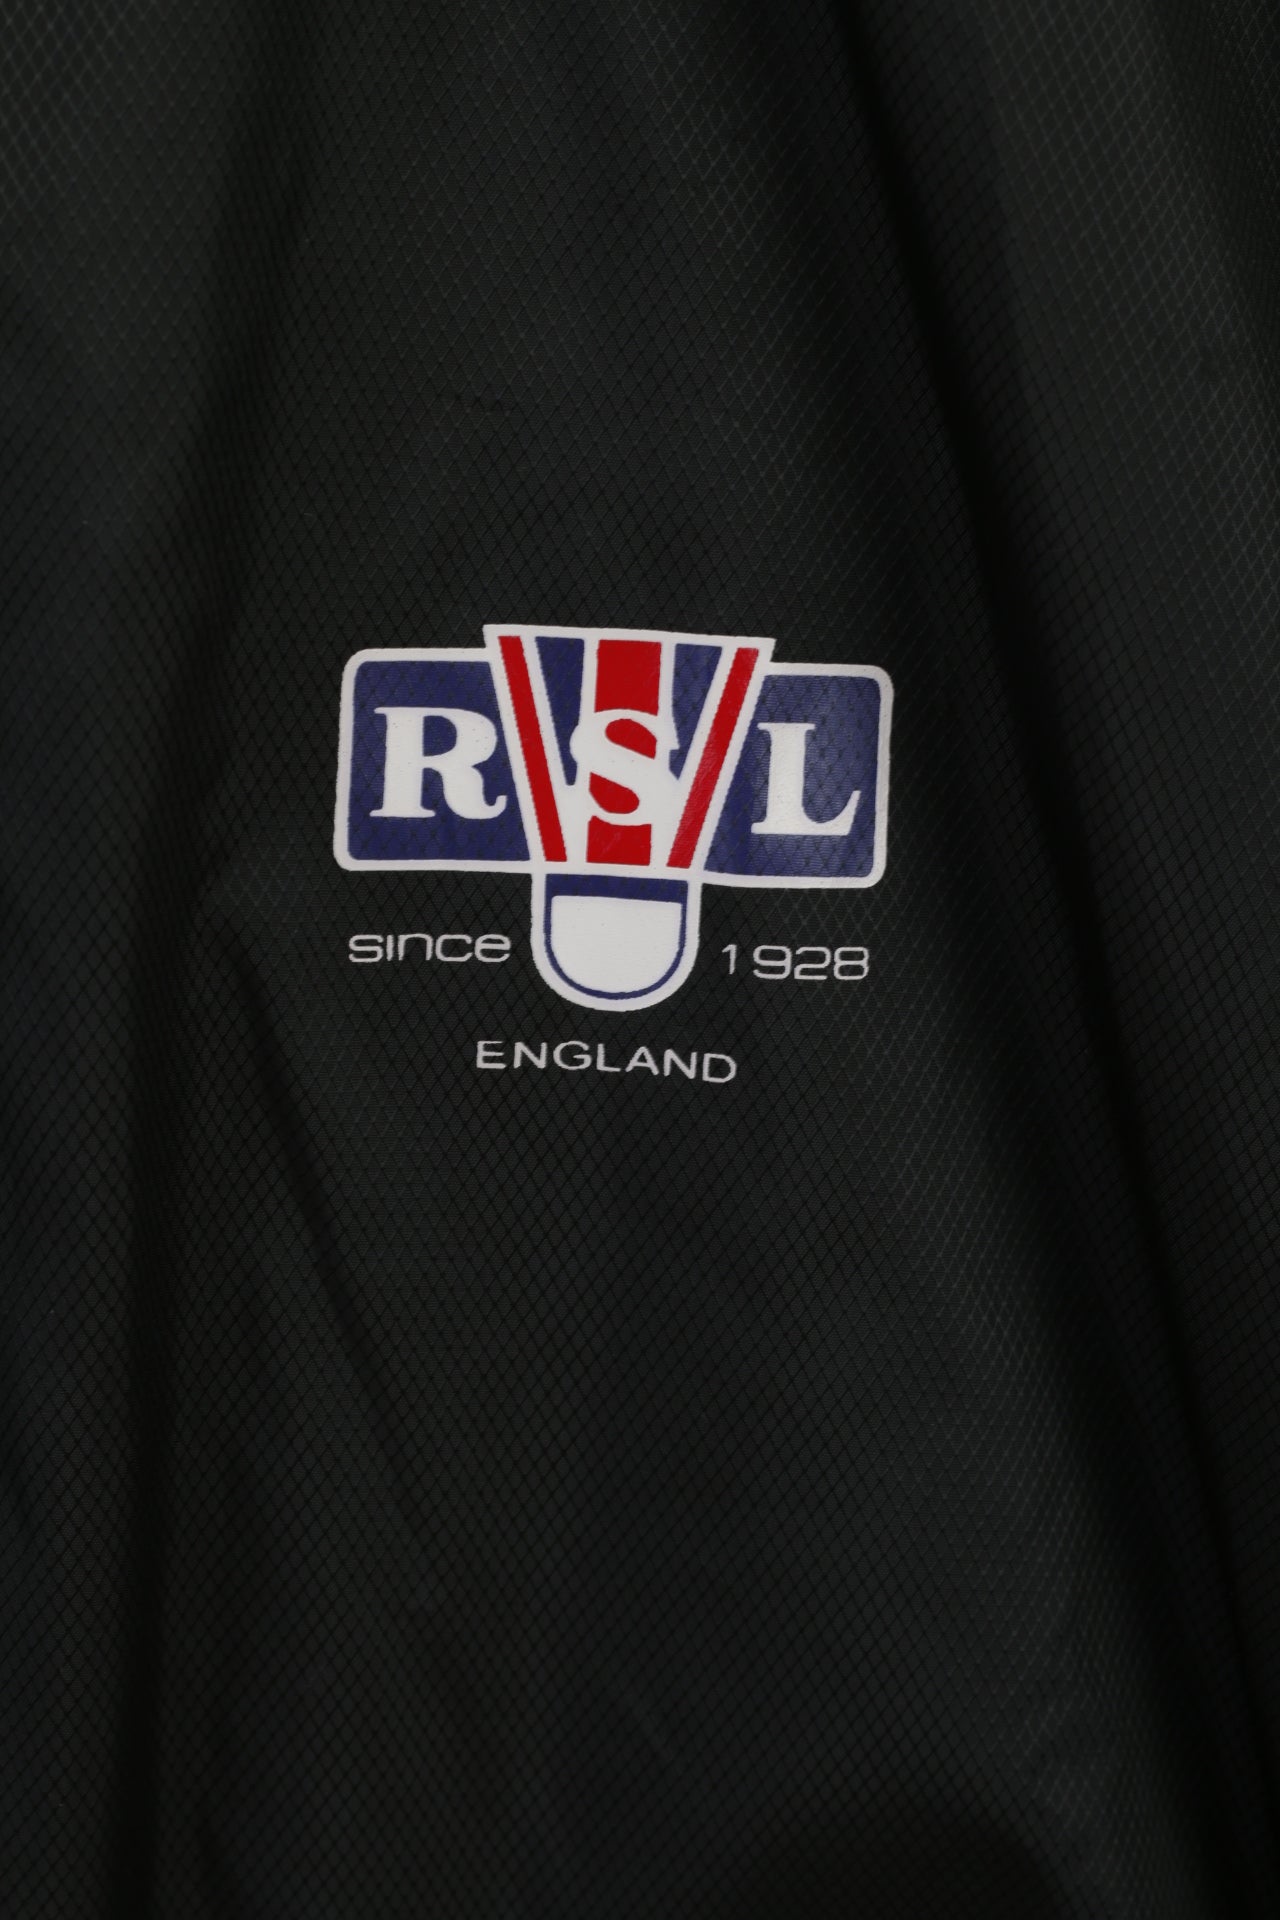 RSL Mens XL Jacket Black Lightweight Full Zipper Active Sportswear Top